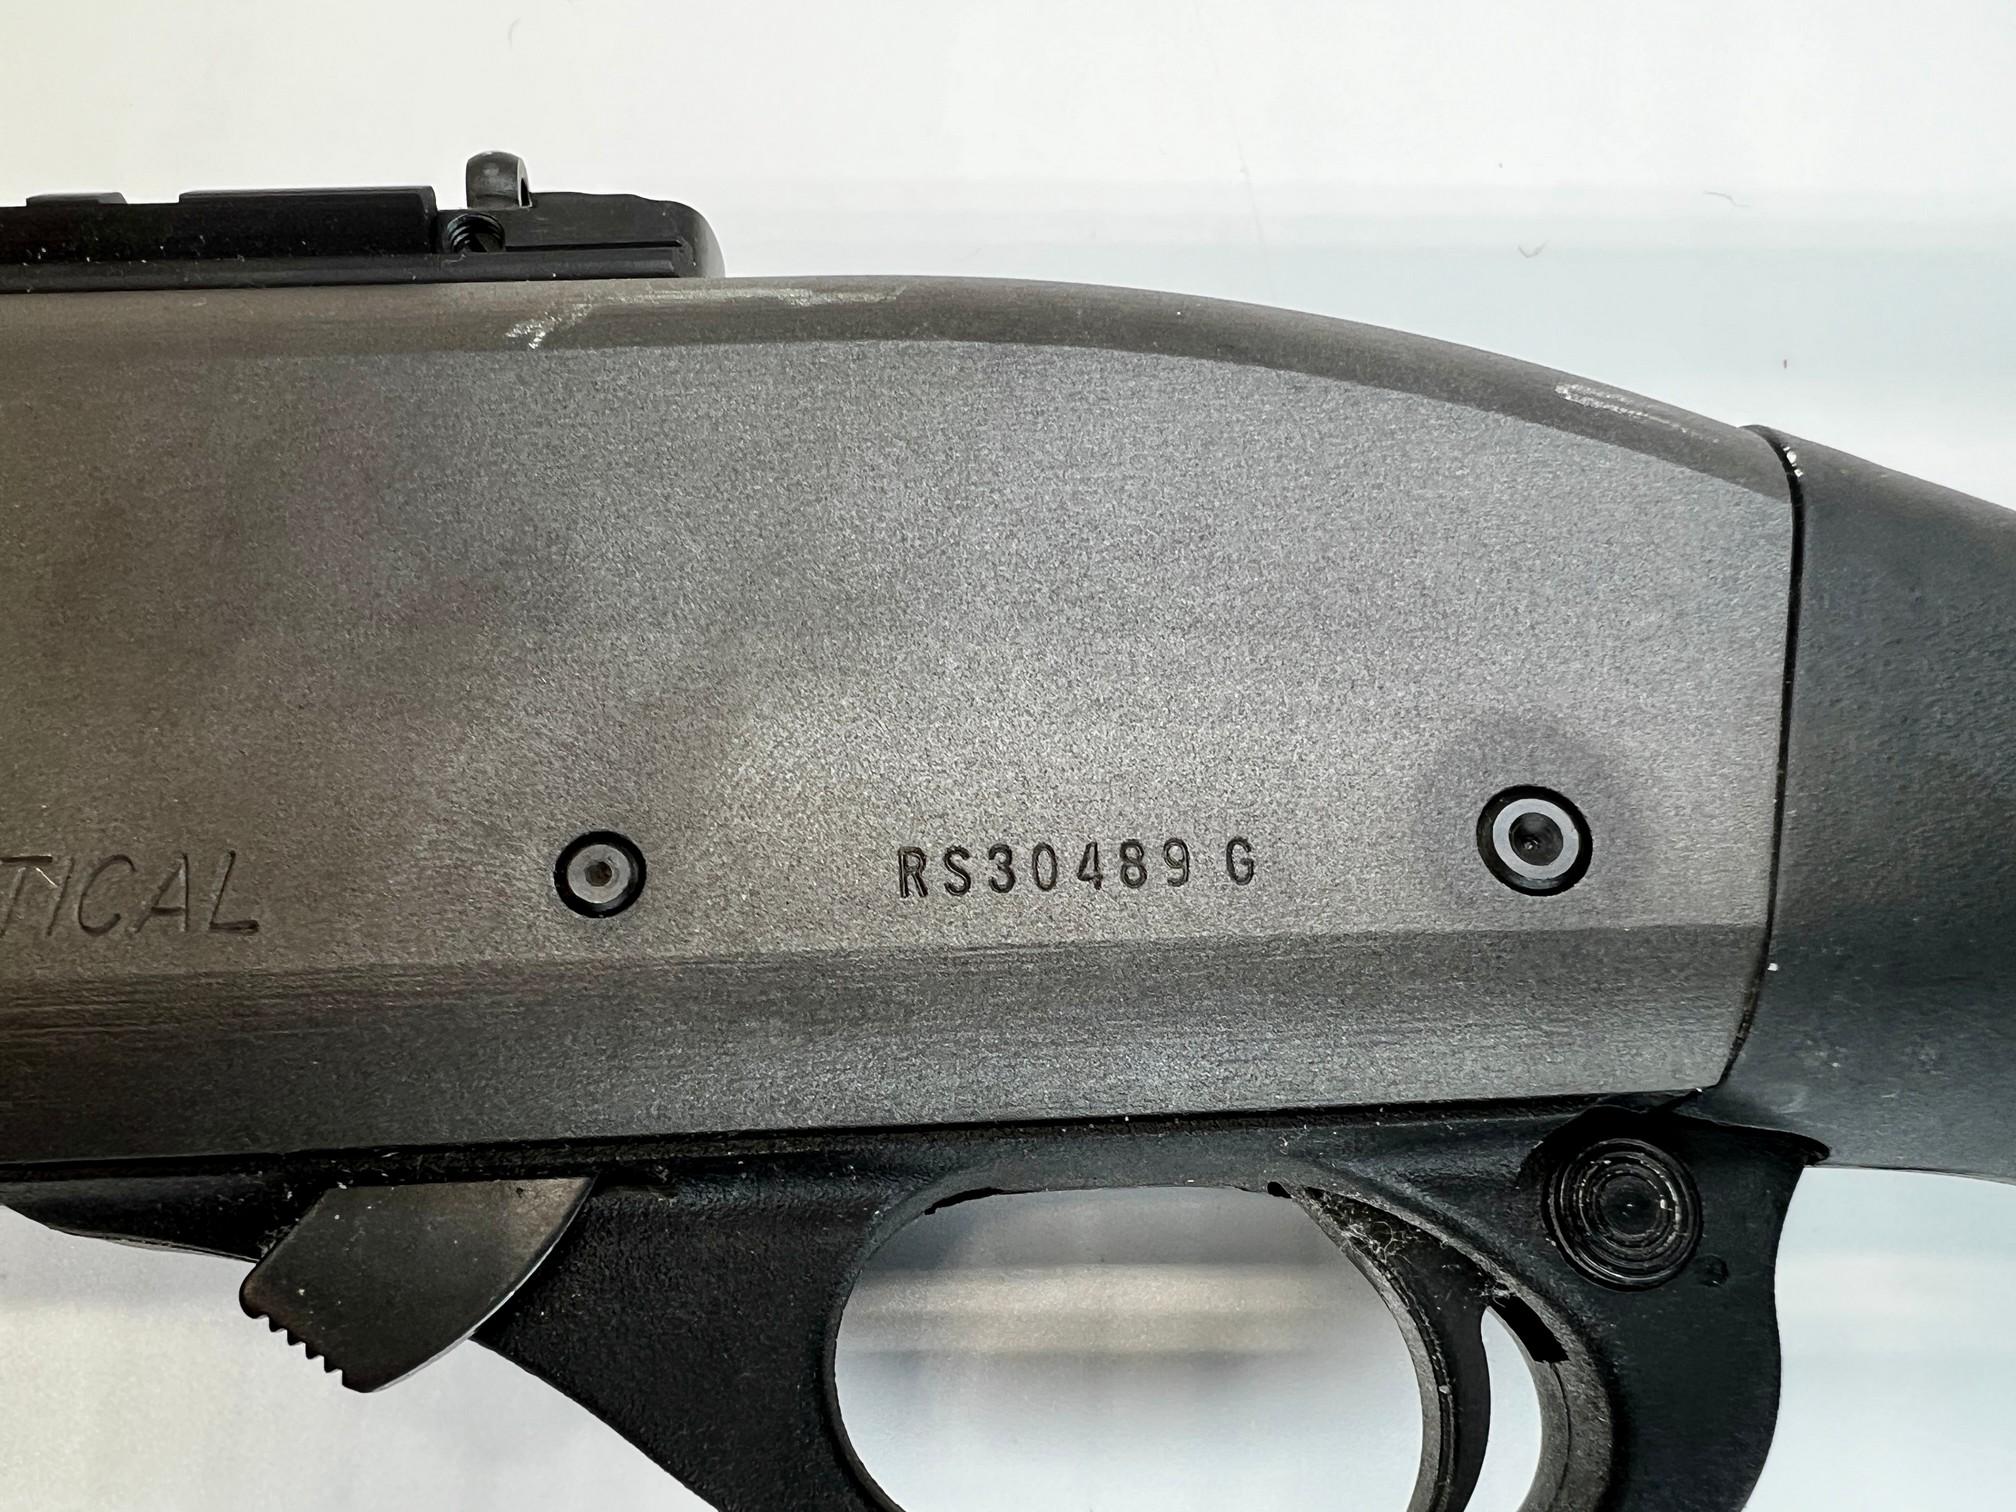 Remington 870 Tactical 12 gauge